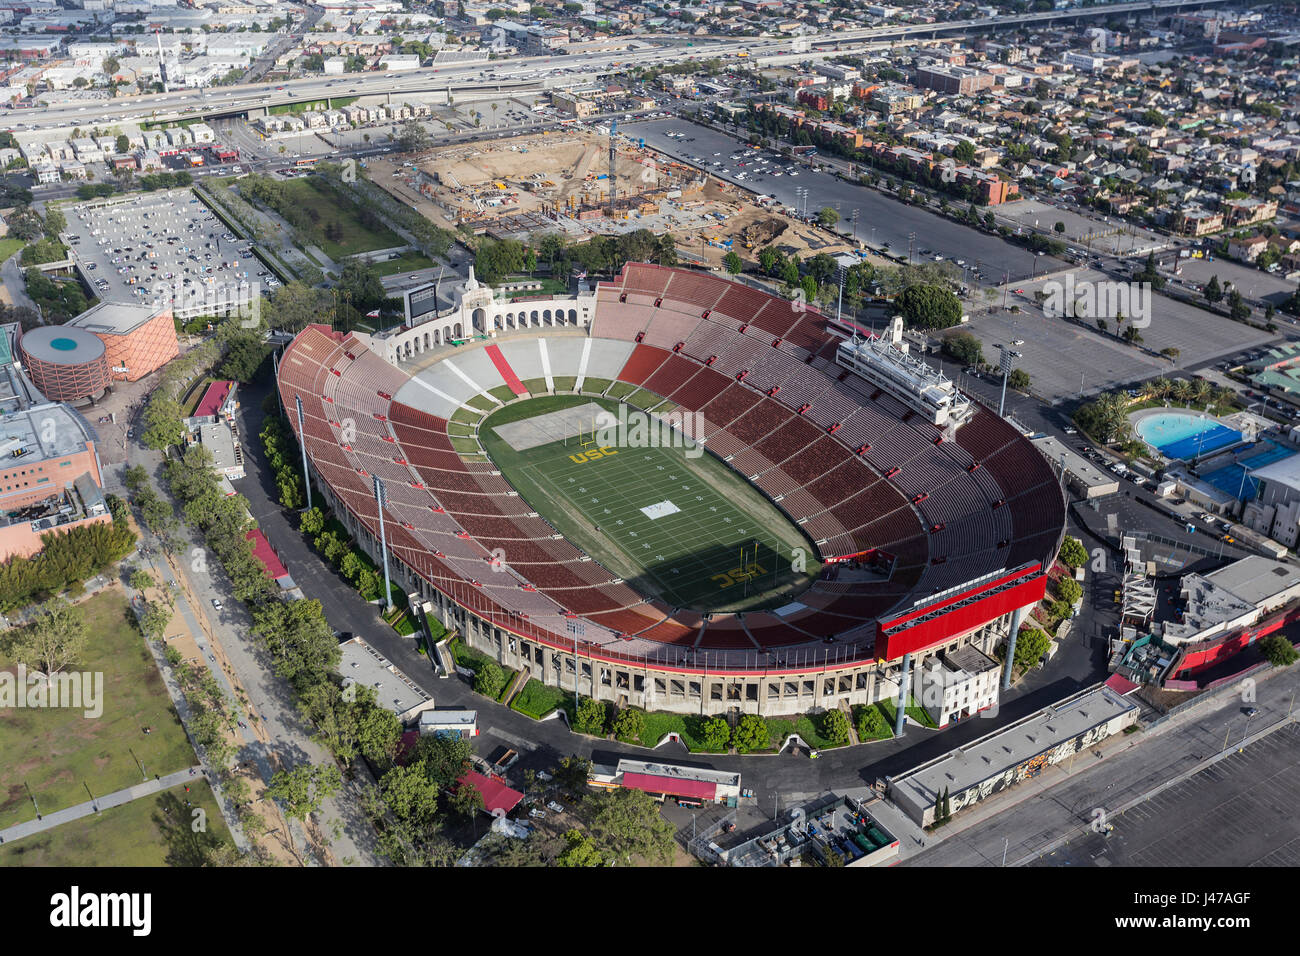 Los Angeles, Kalifornien, USA - 12. April 2017: Luftaufnahme des historischen Kolosseum-Stadion in der Nähe von Innenstadt und USC. Stockfoto